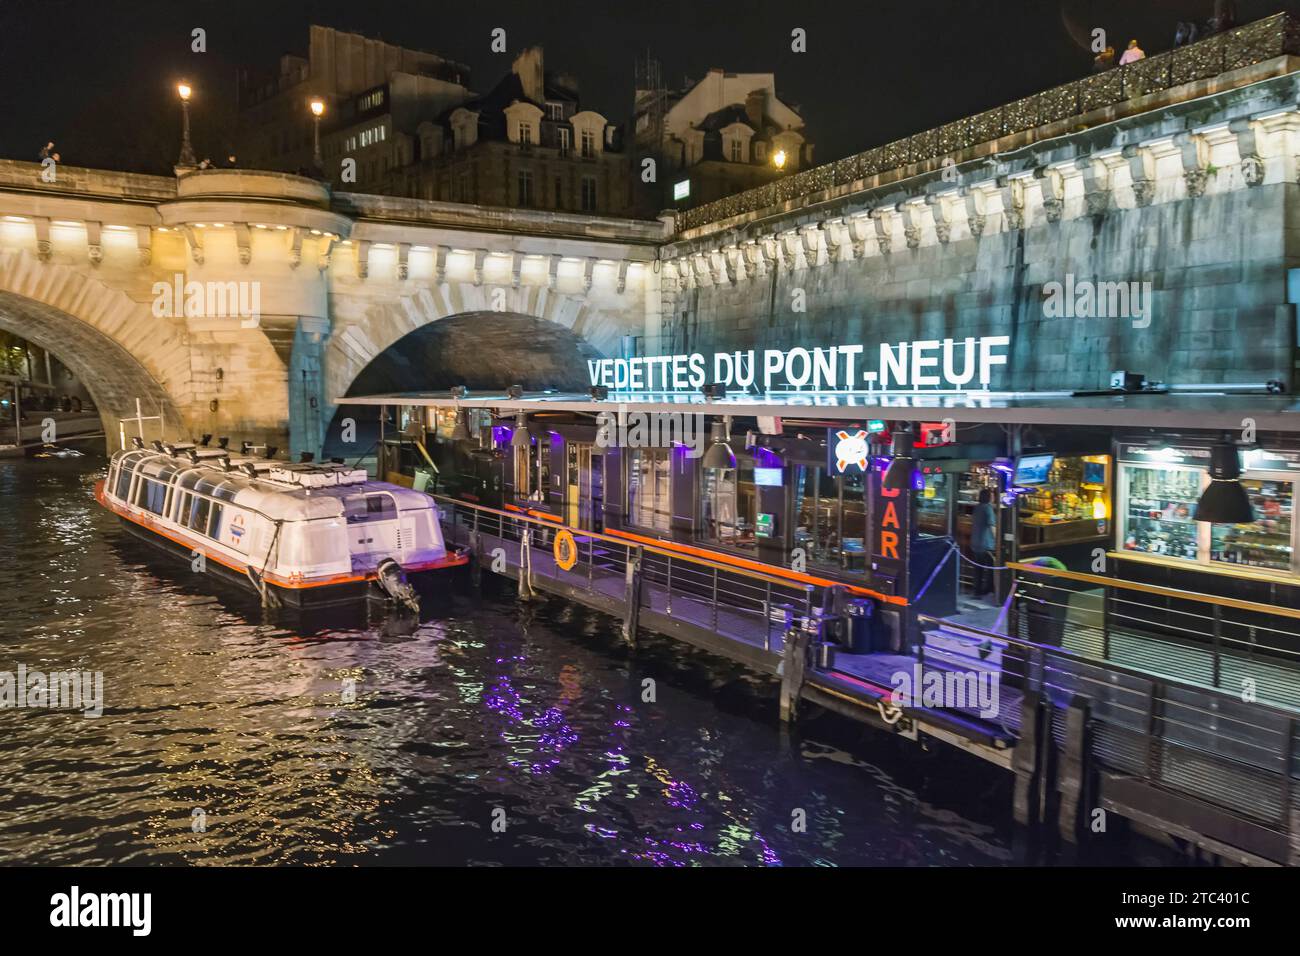 Parigi, Francia. Porto delle Vedettes du Pont-Neuf di notte. Bateaux. Gite turistiche in barca sul fiume Senna. Foto Stock